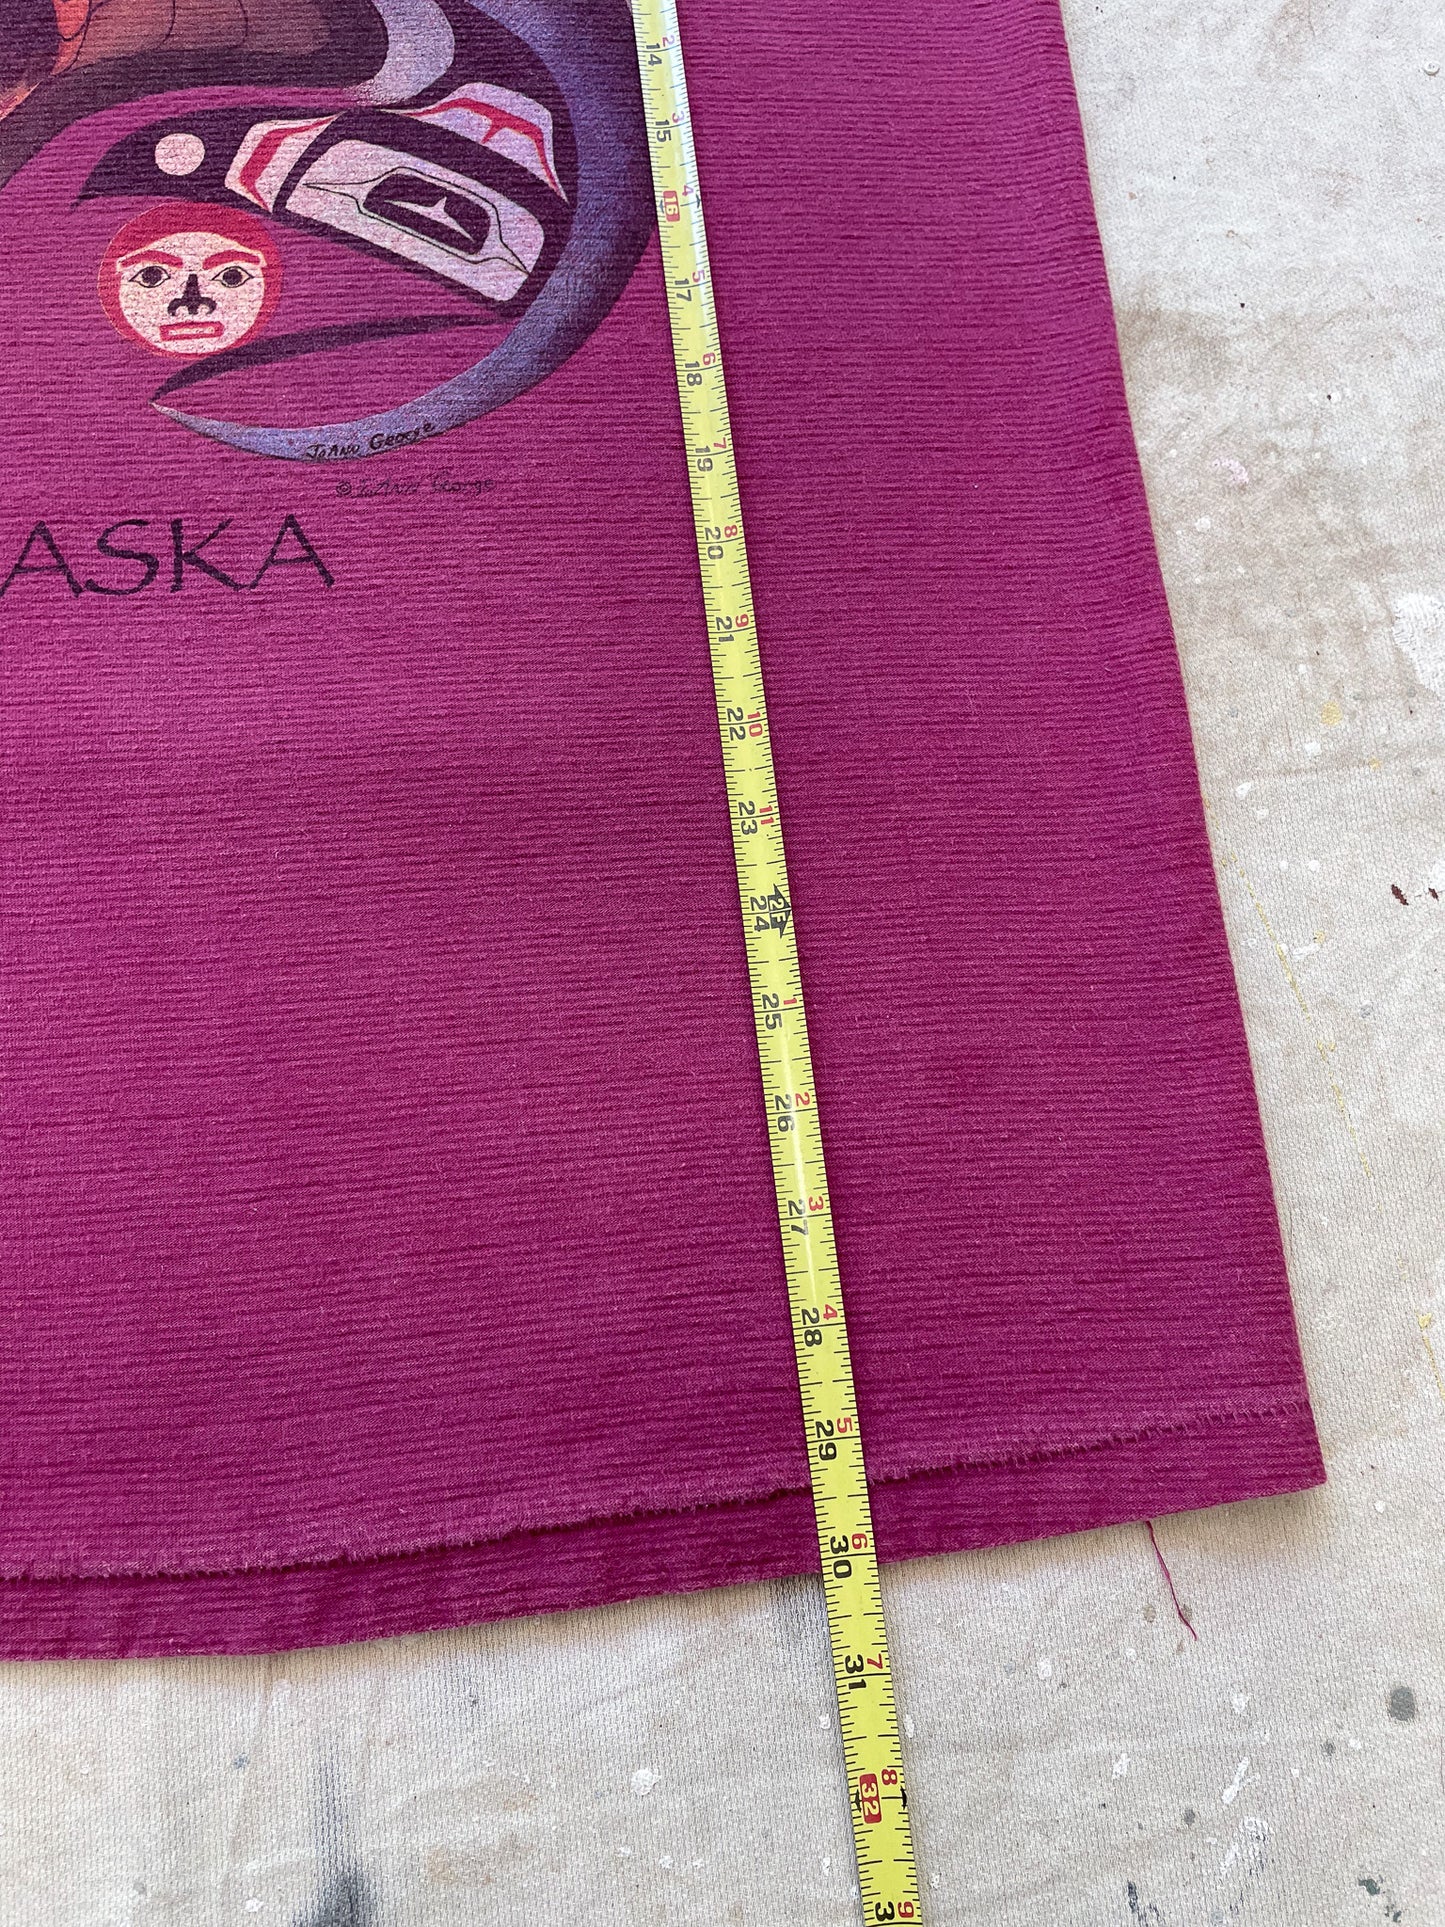 Alaska Heavyweight T-Shirt—[M]